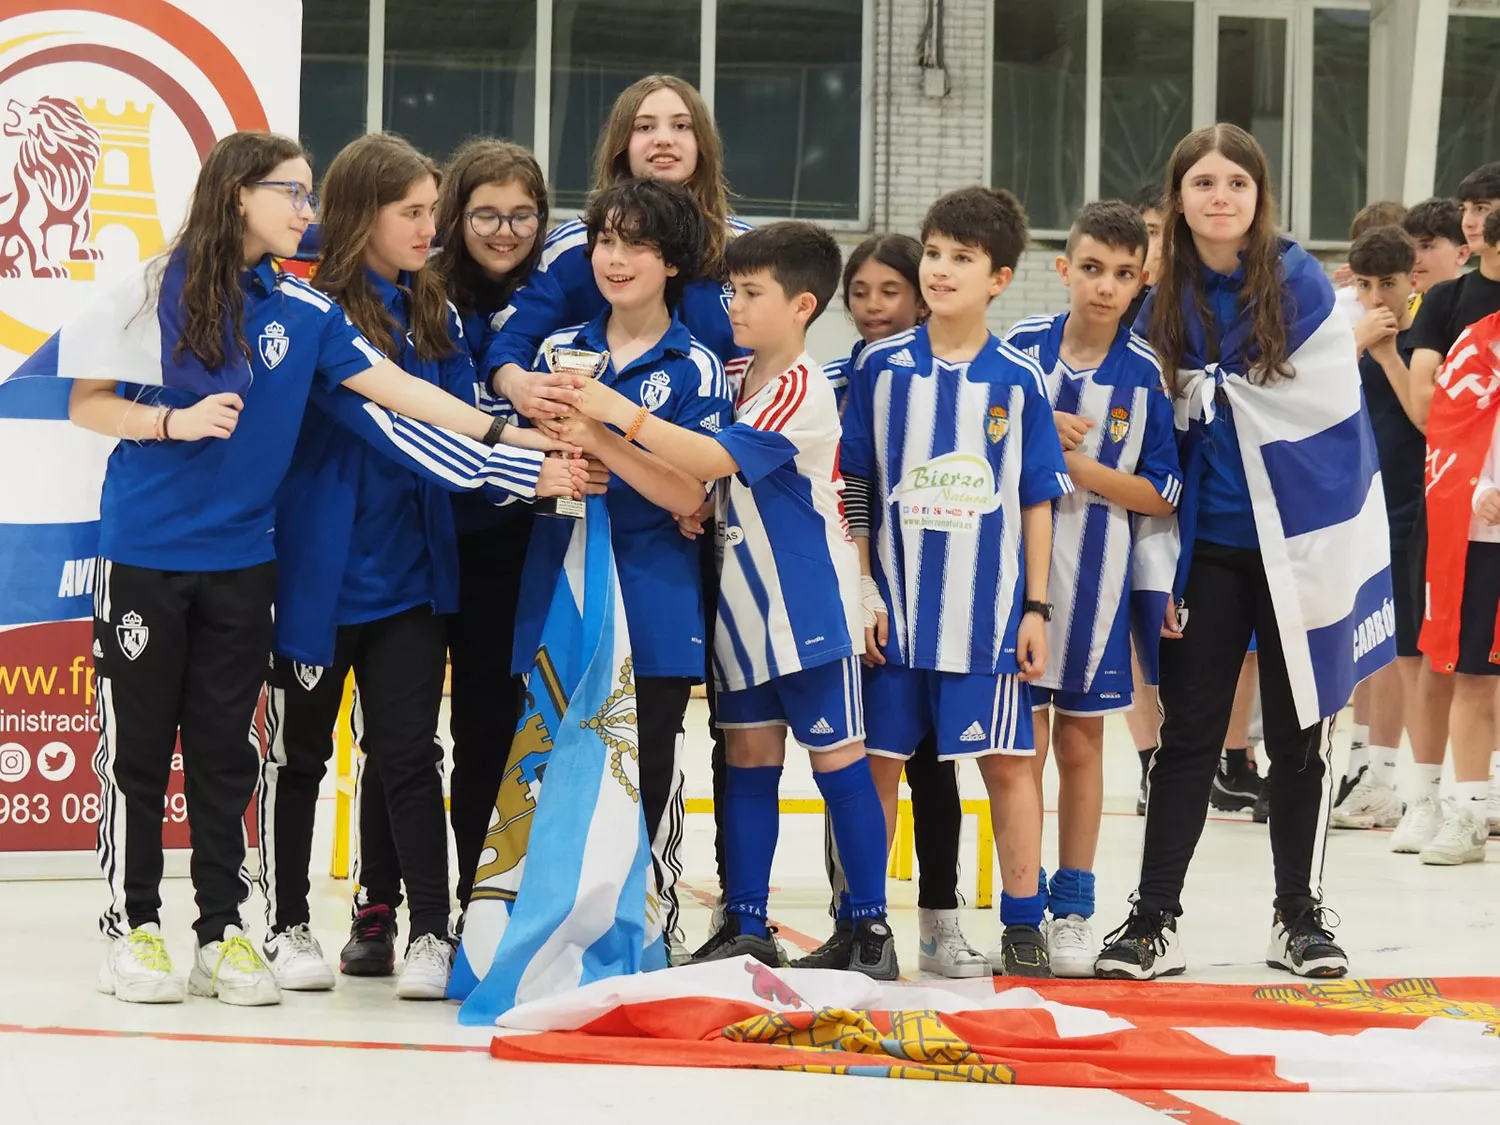 La Ponferradina Hockey cierra la temporada coronándose campeón de Copa de CyL en categoría Juvenil .